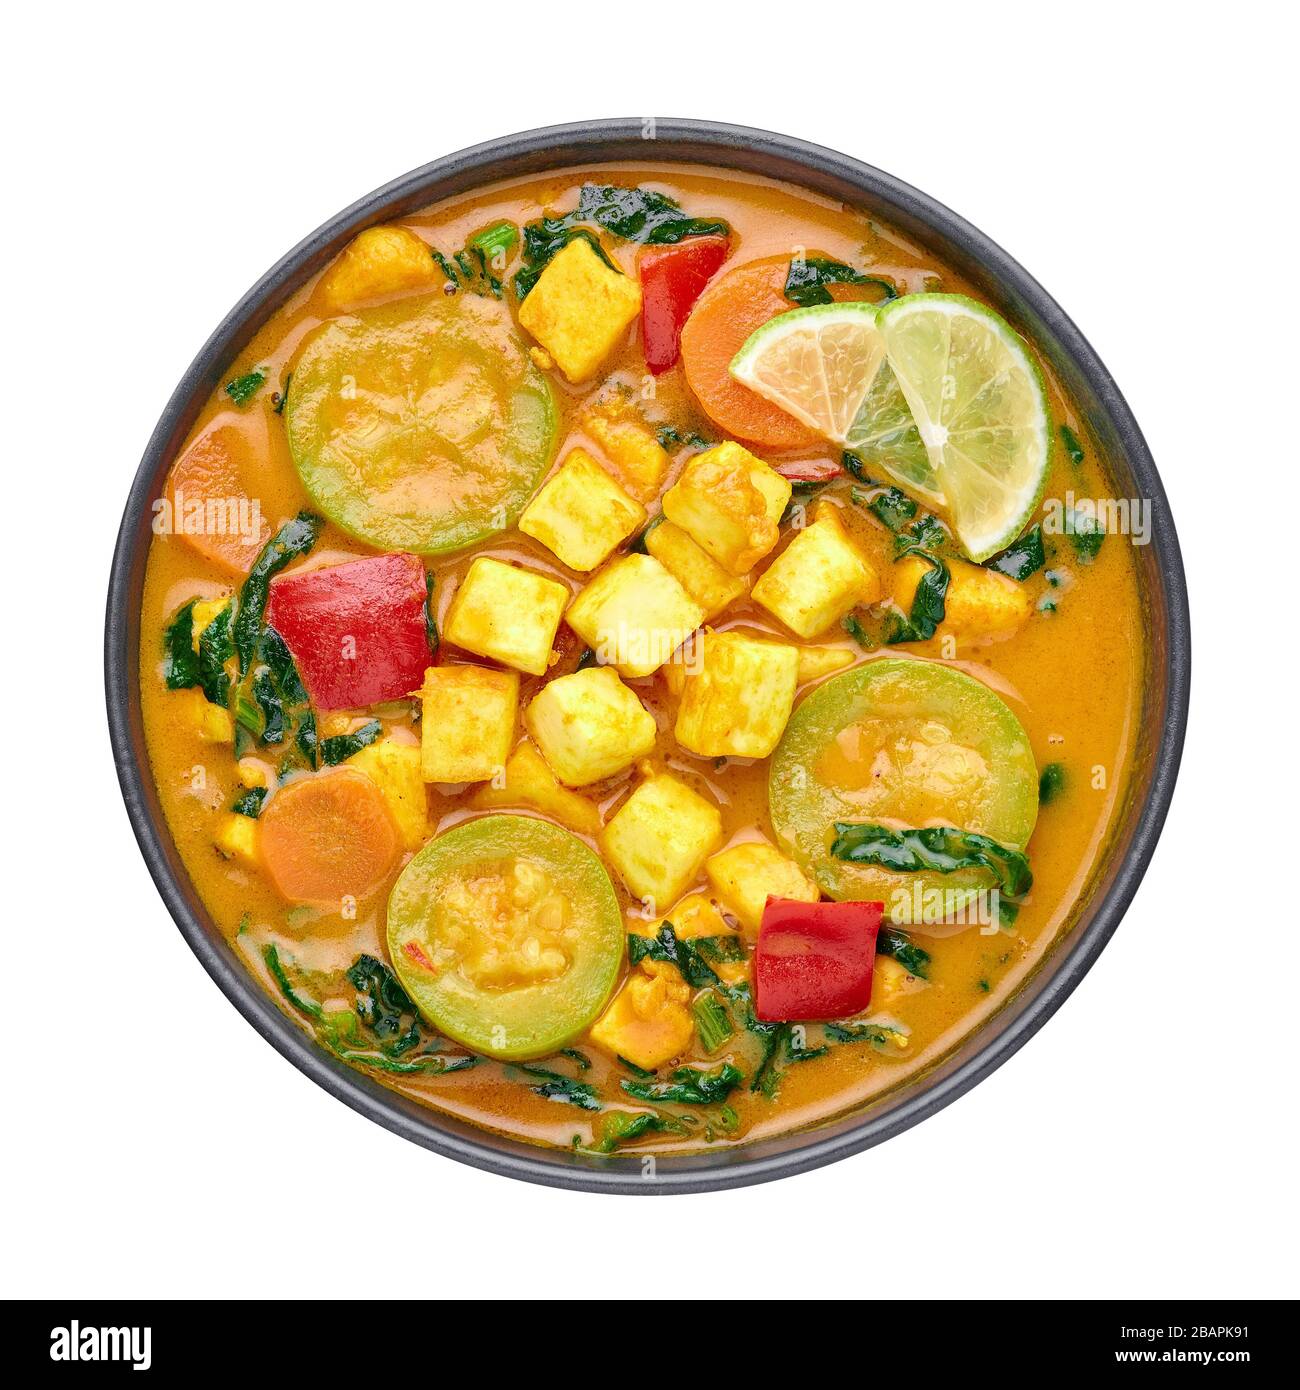 Une curry thaï de veau jaune avec tofu et légumes isolés sur fond blanc. Curry thaïlandais végétarien avec tofu, courgettes, poivron, épinards, carottes Banque D'Images